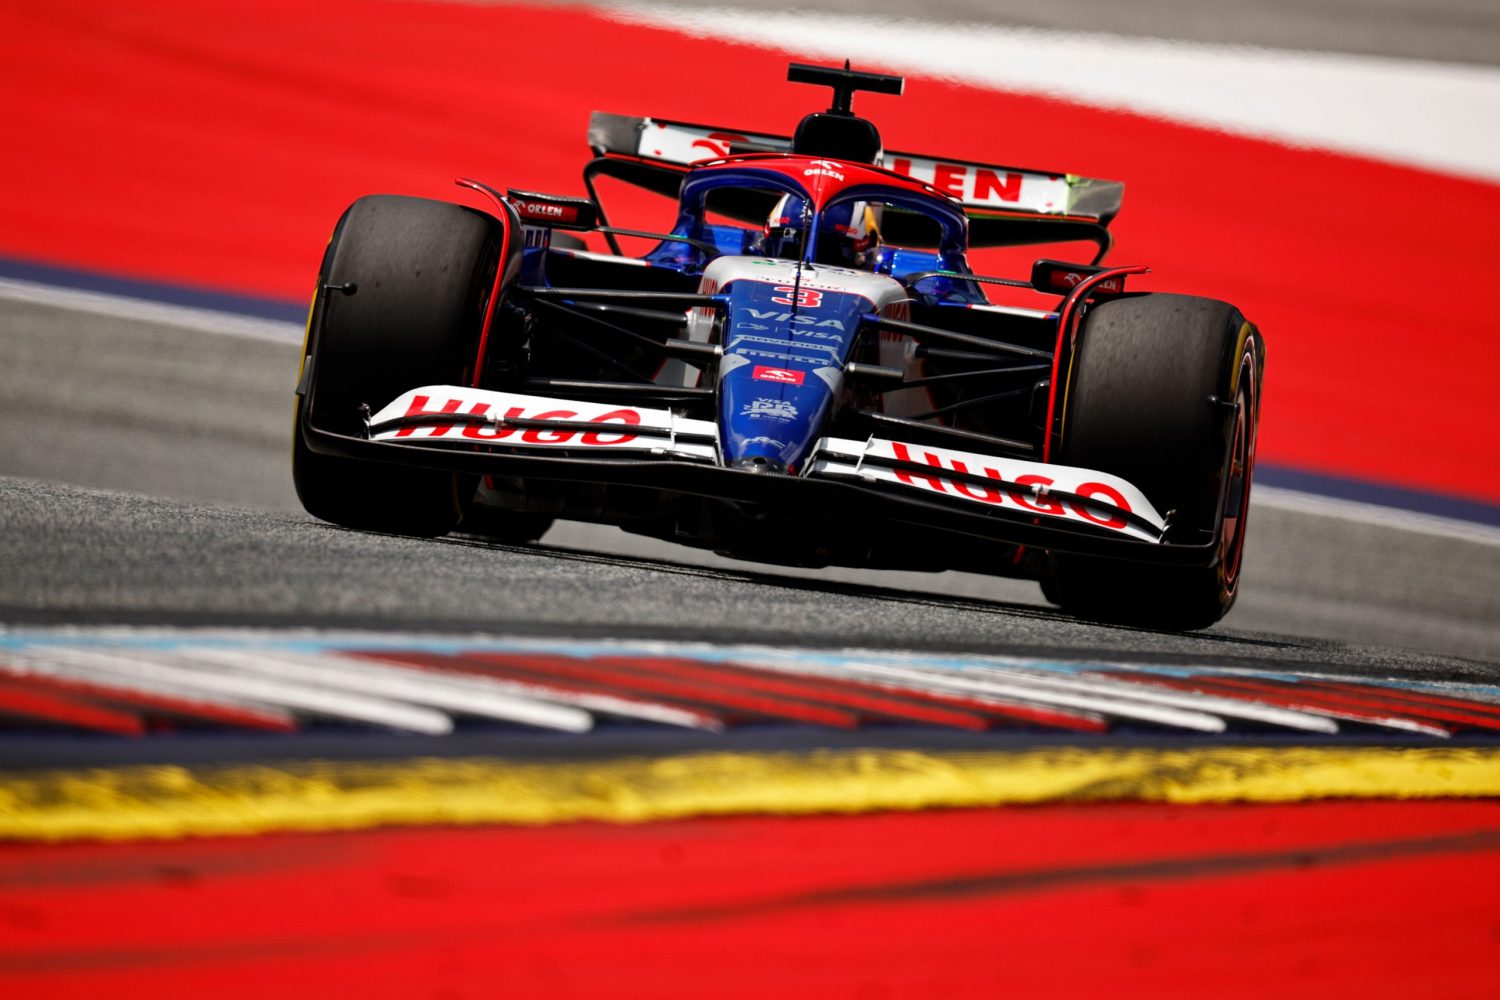 Ricciardo heads into Austrian GP with ‘guesswork’ setup